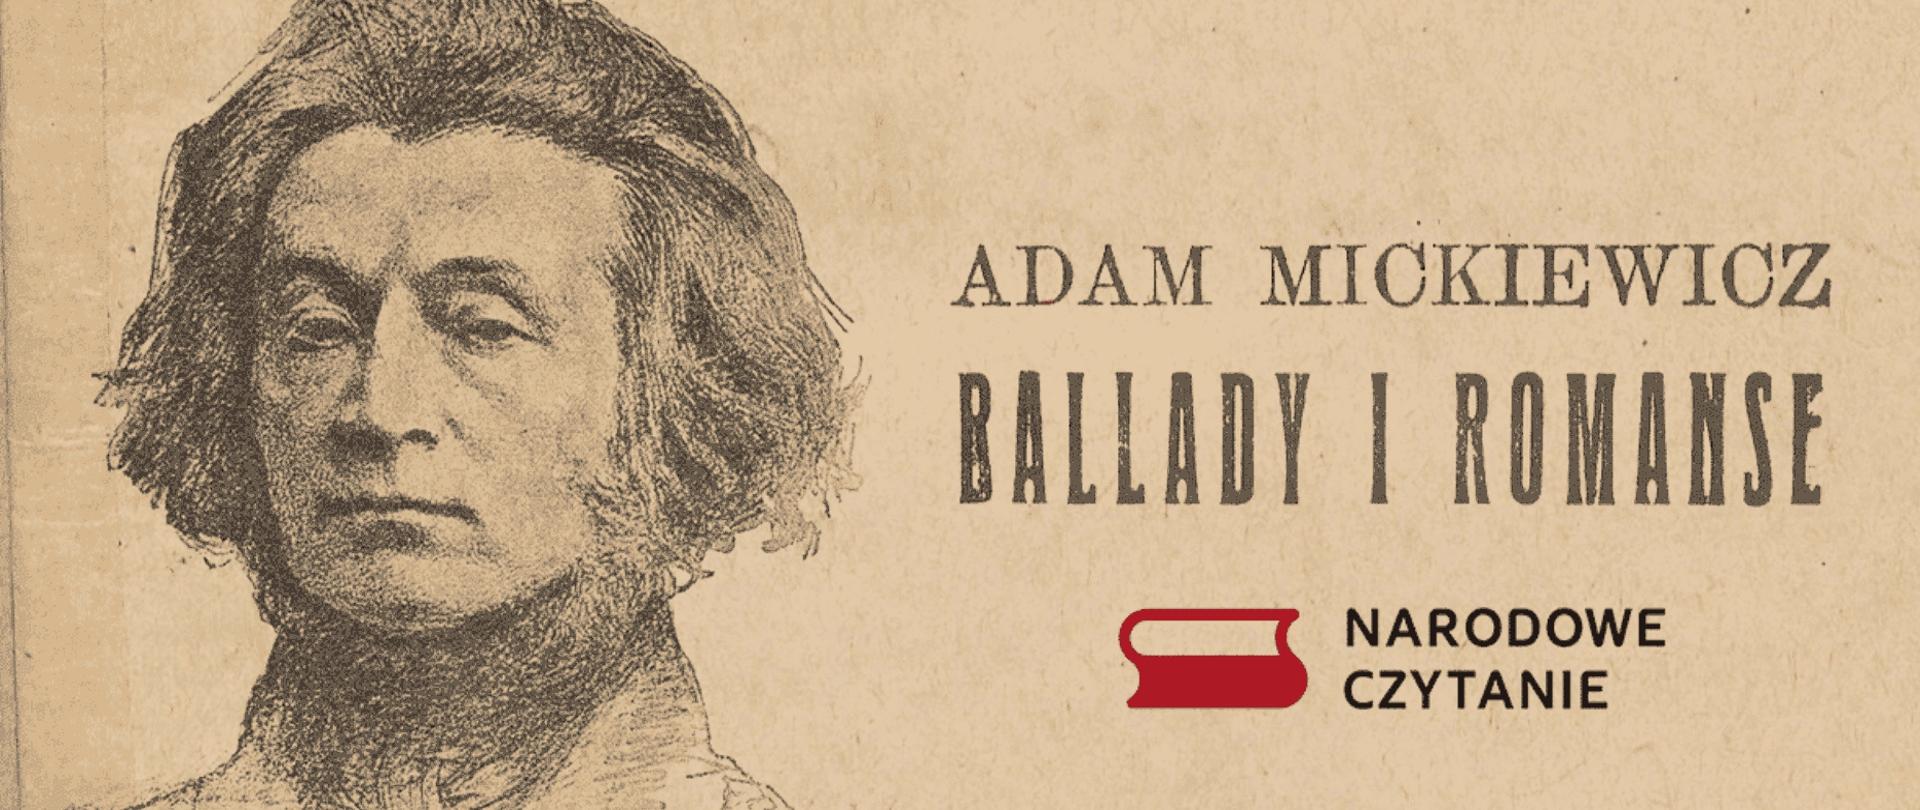 Grafika przedstawia portret Adama Mickiewicza oraz prezentuje napis: Adam Mickiewicz, Ballady u romanse, Narodowe Czytanie